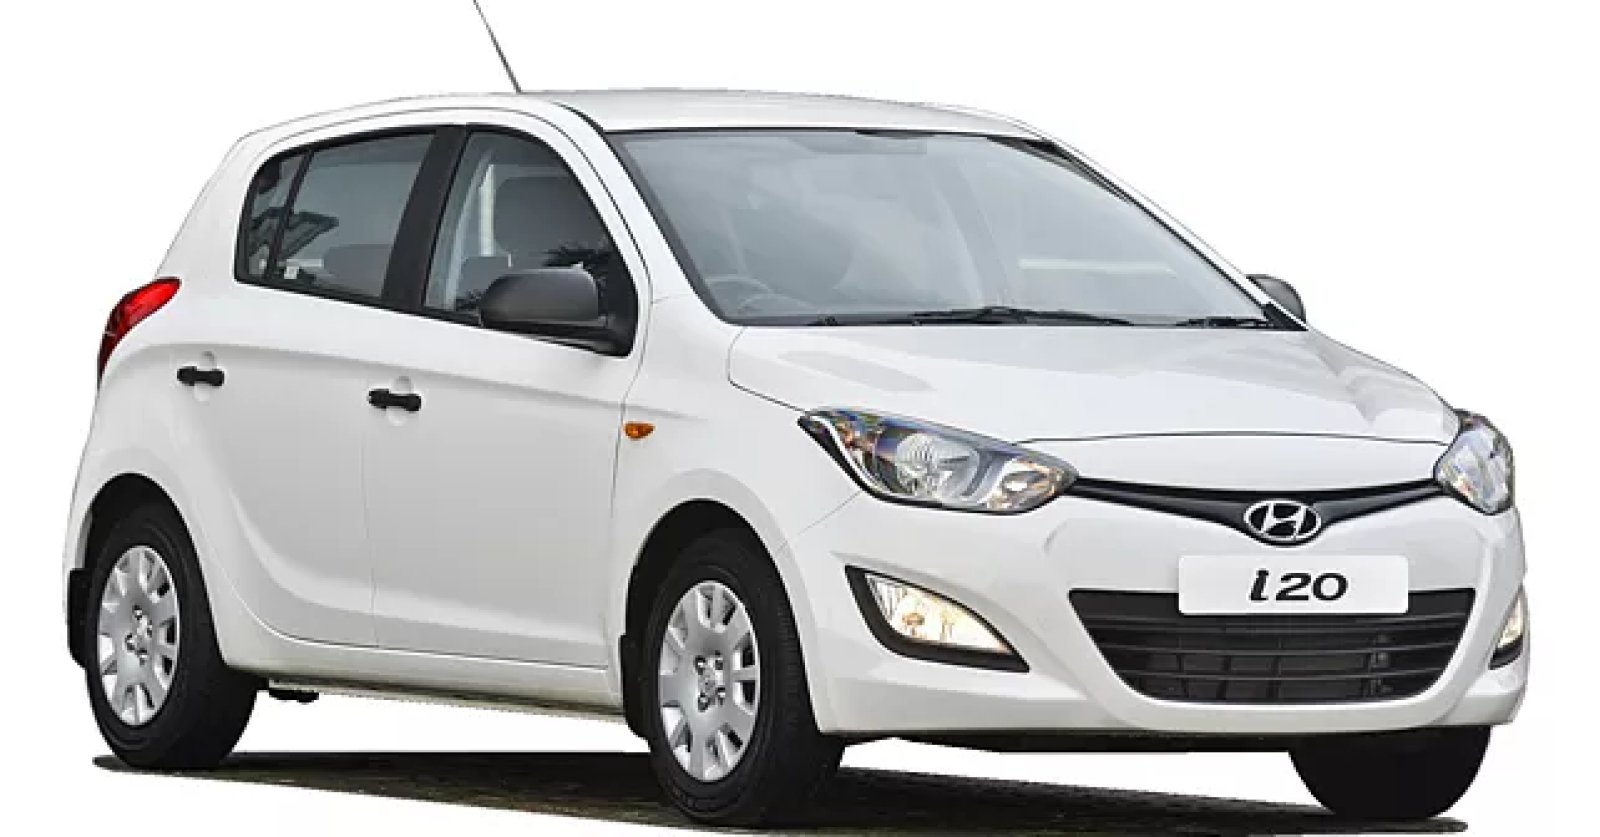 हुंडई i20 स्पोर्ट्स वेरिएंट लॉन्च: ₹6.69 लाख में लांच होगी यह Hyundai कार, सनरूफ के साथ मिलेंगे एडवांस फीचर्स